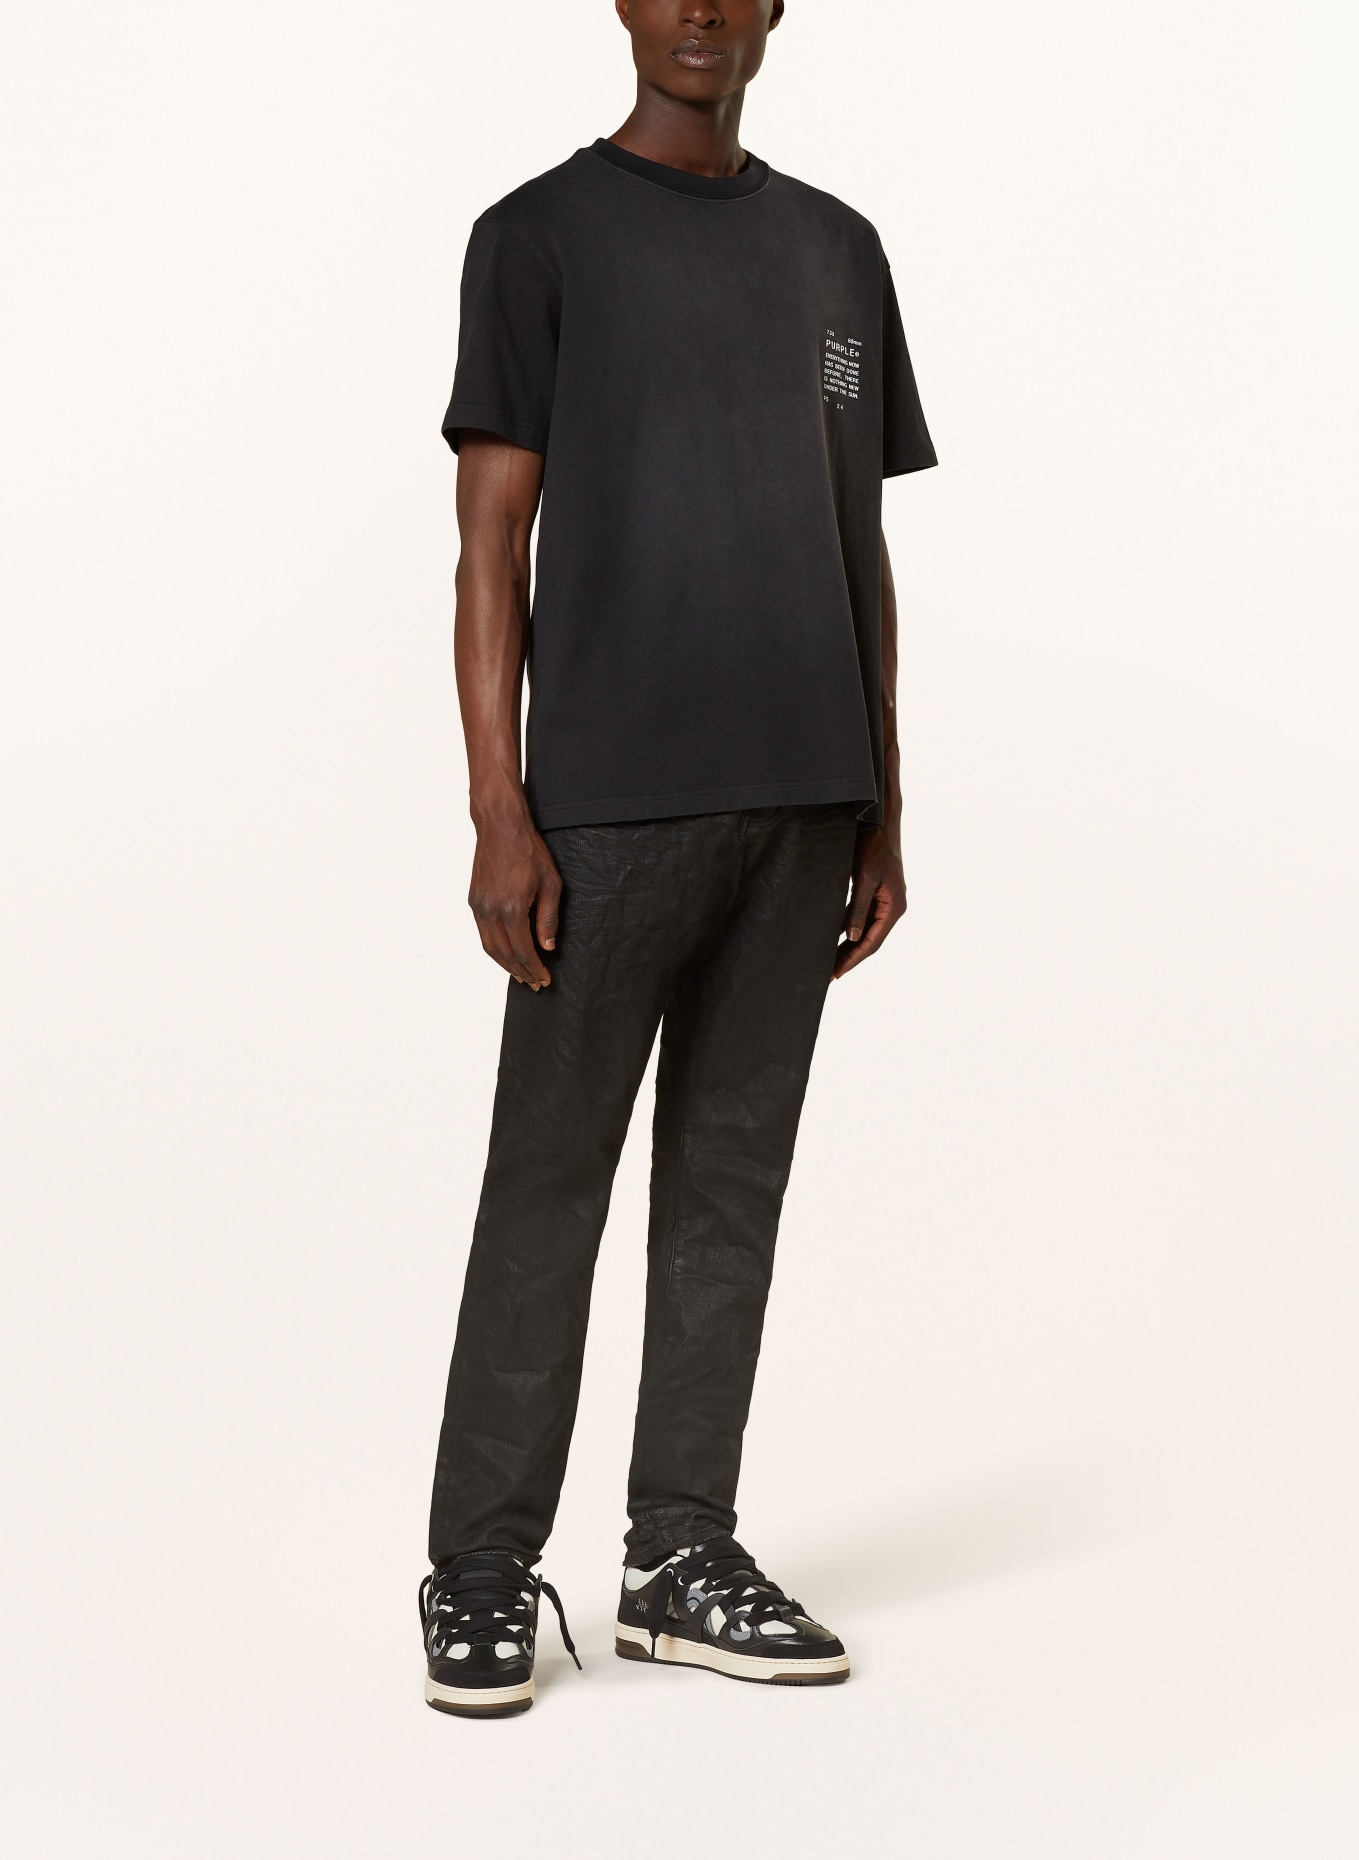 PURPLE BRAND T-shirt, Color: BLACK (Image 2)